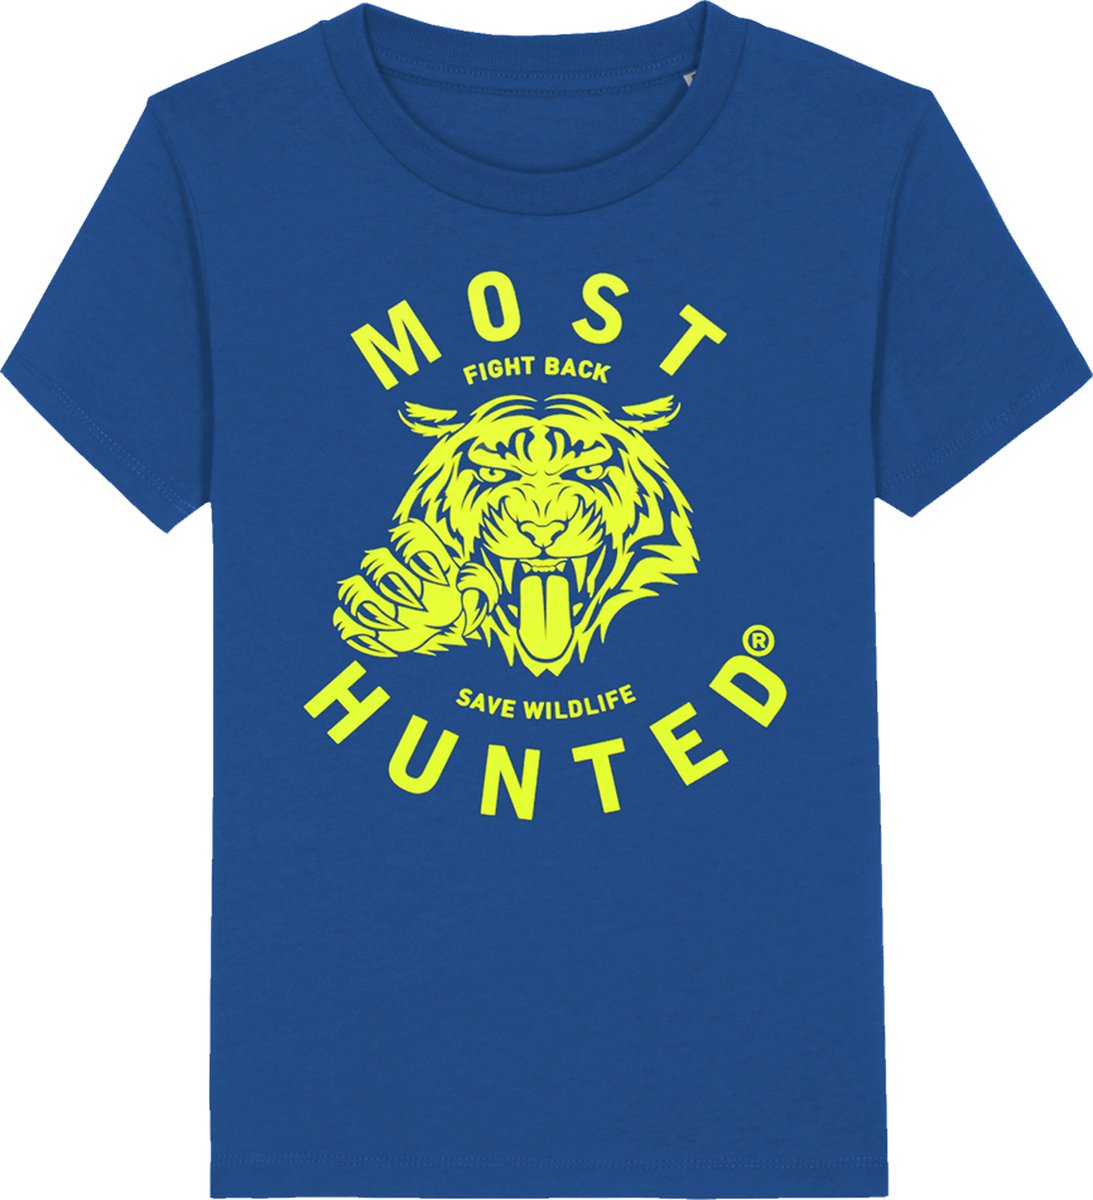 Most Hunted - kinder t-shirt - tijger - blauw - fluor geel - maat 98/104